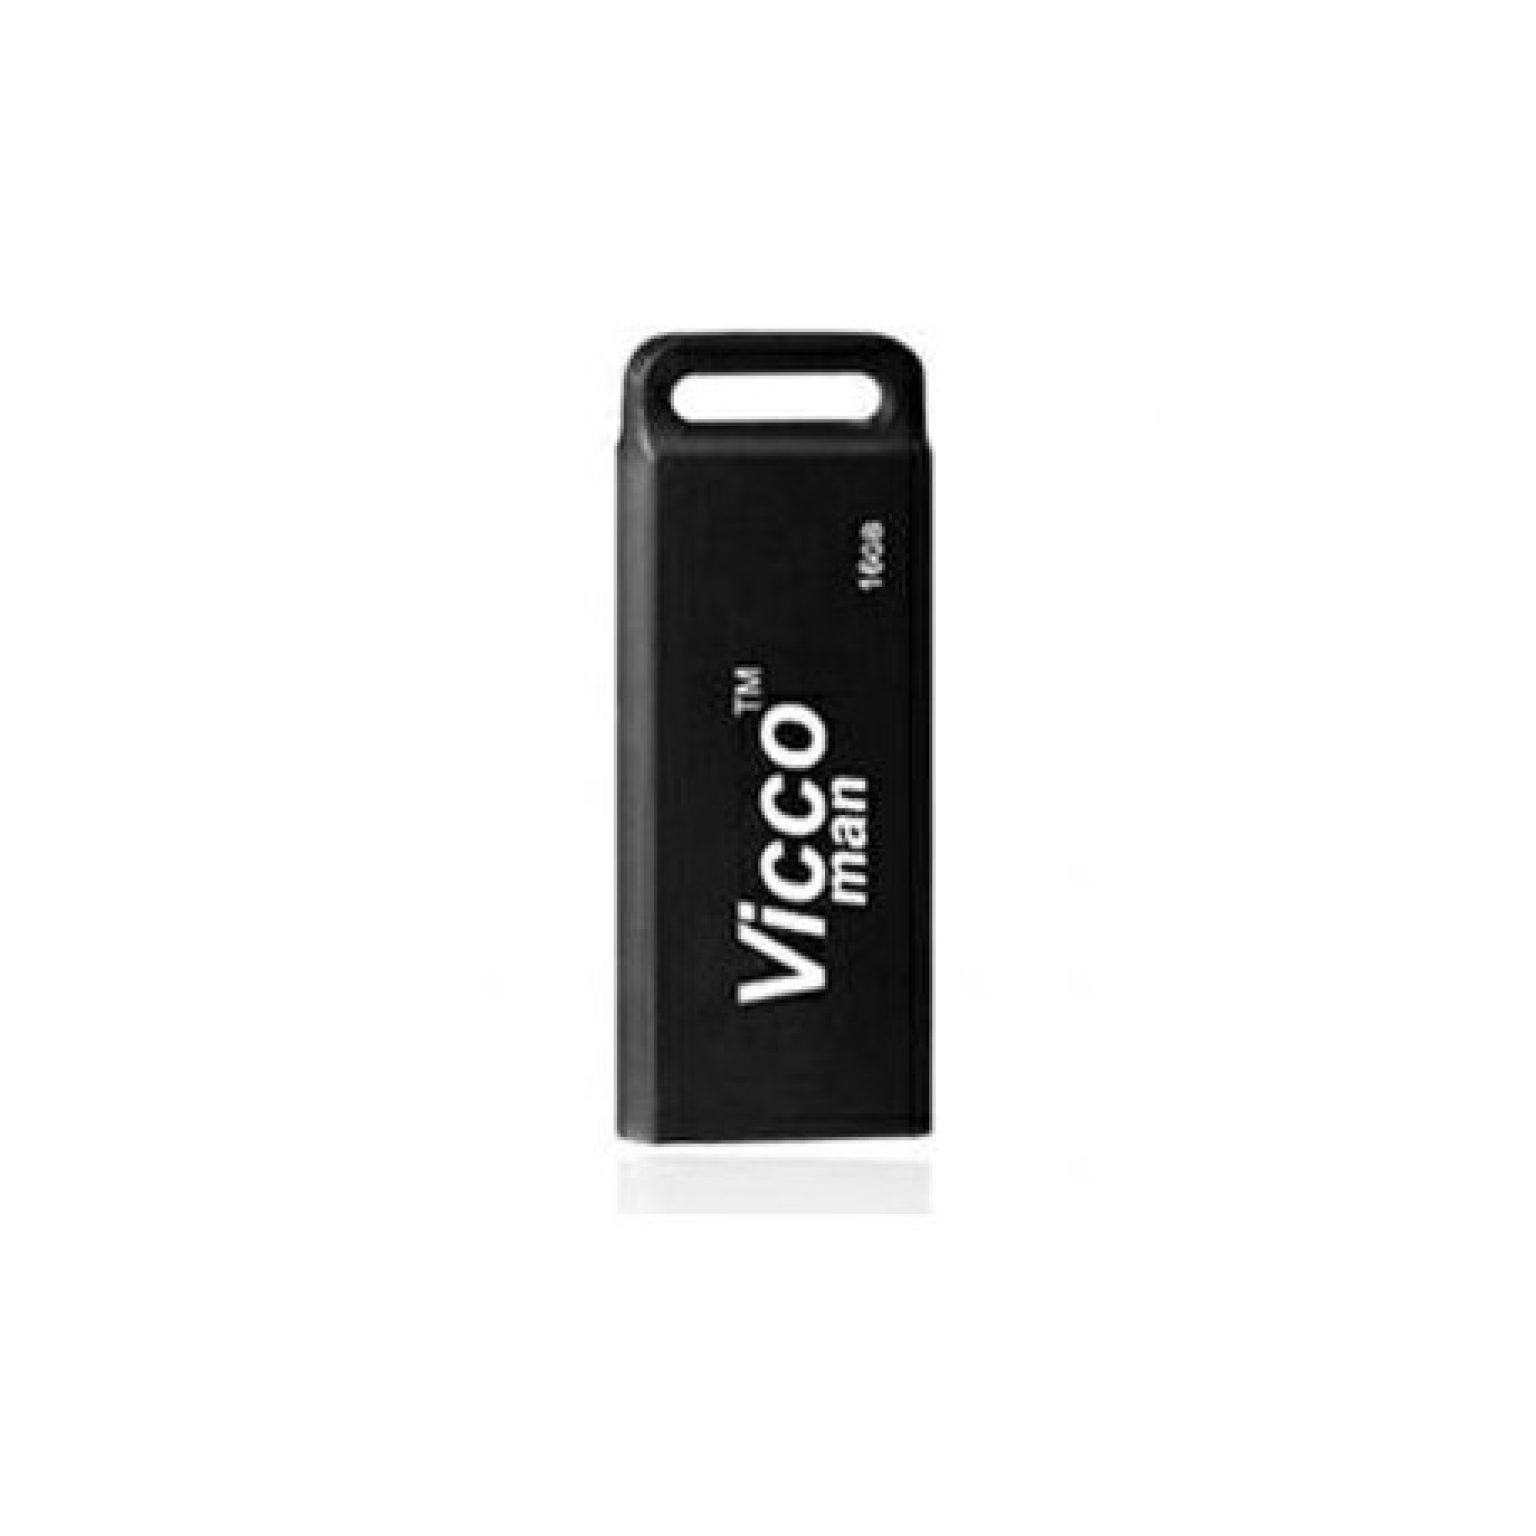 vicco man 16gb vc230 b usb 20 flash memory black